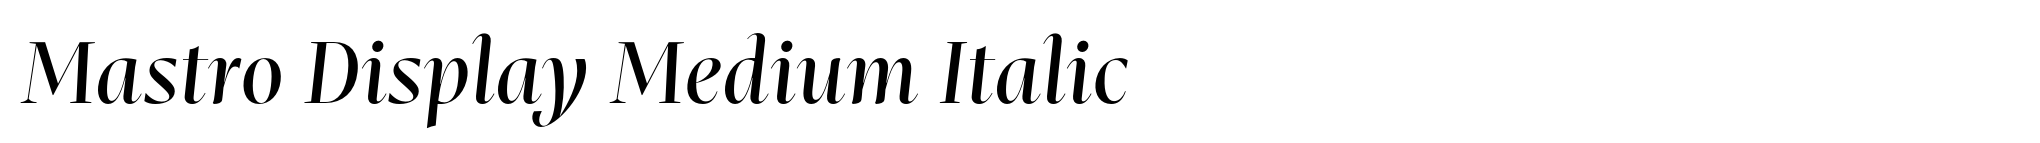 Mastro Display Medium Italic image